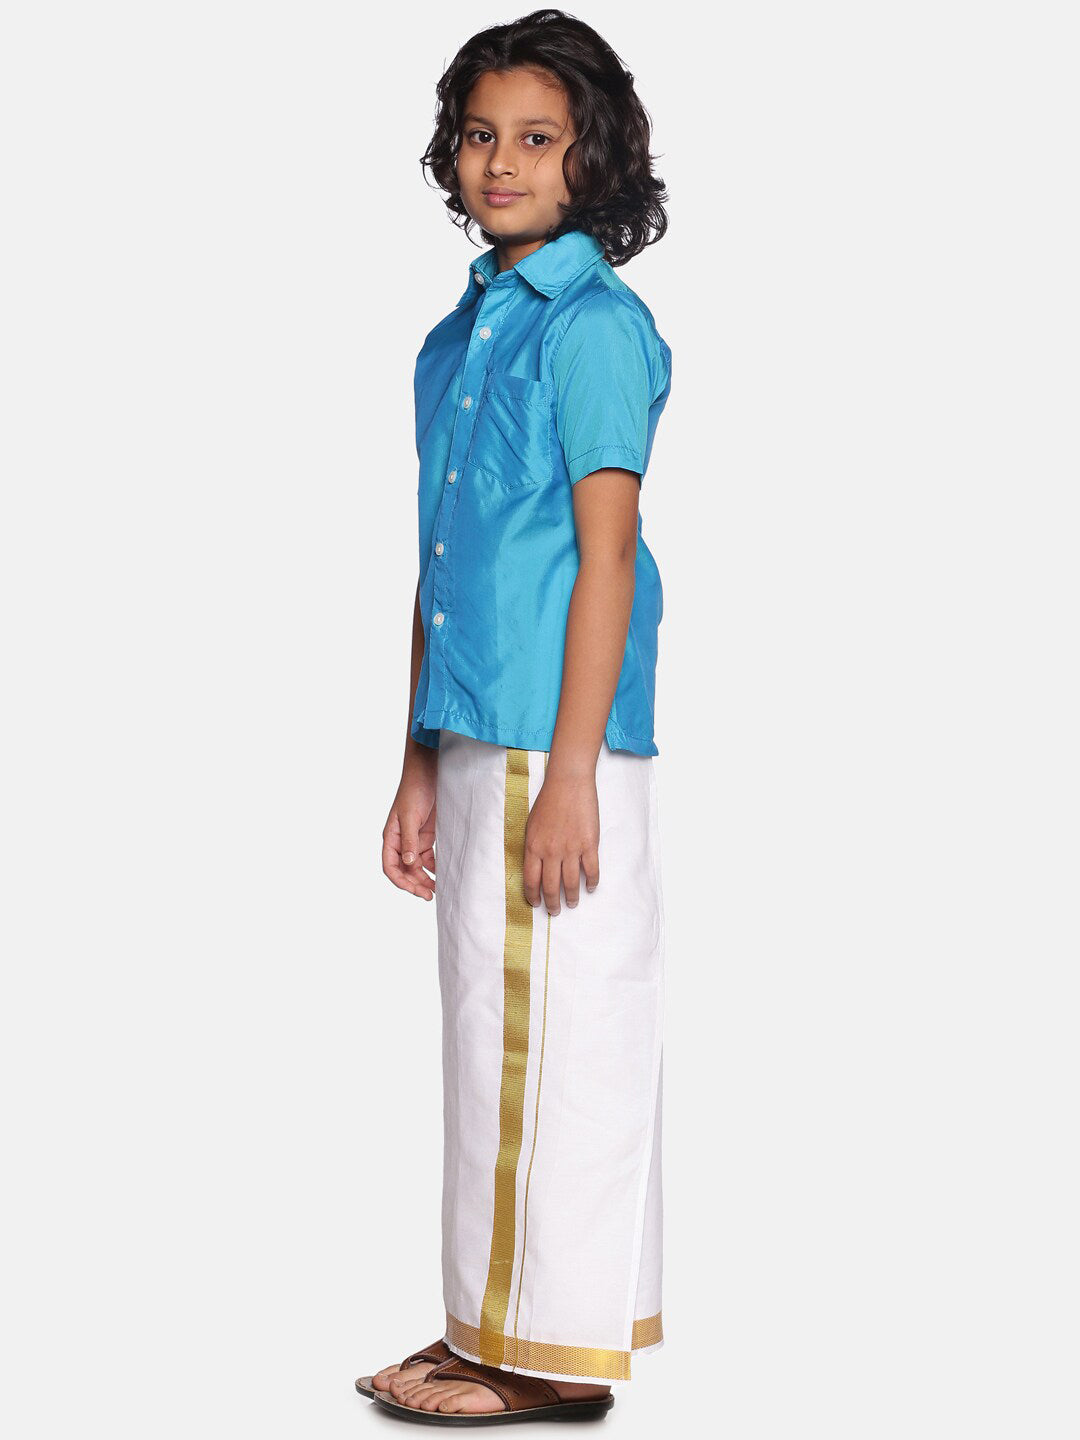 Sethukrishna Boys Turquoise Blue & White Solid Cotton Shirt & Dhoti Set - Distacart